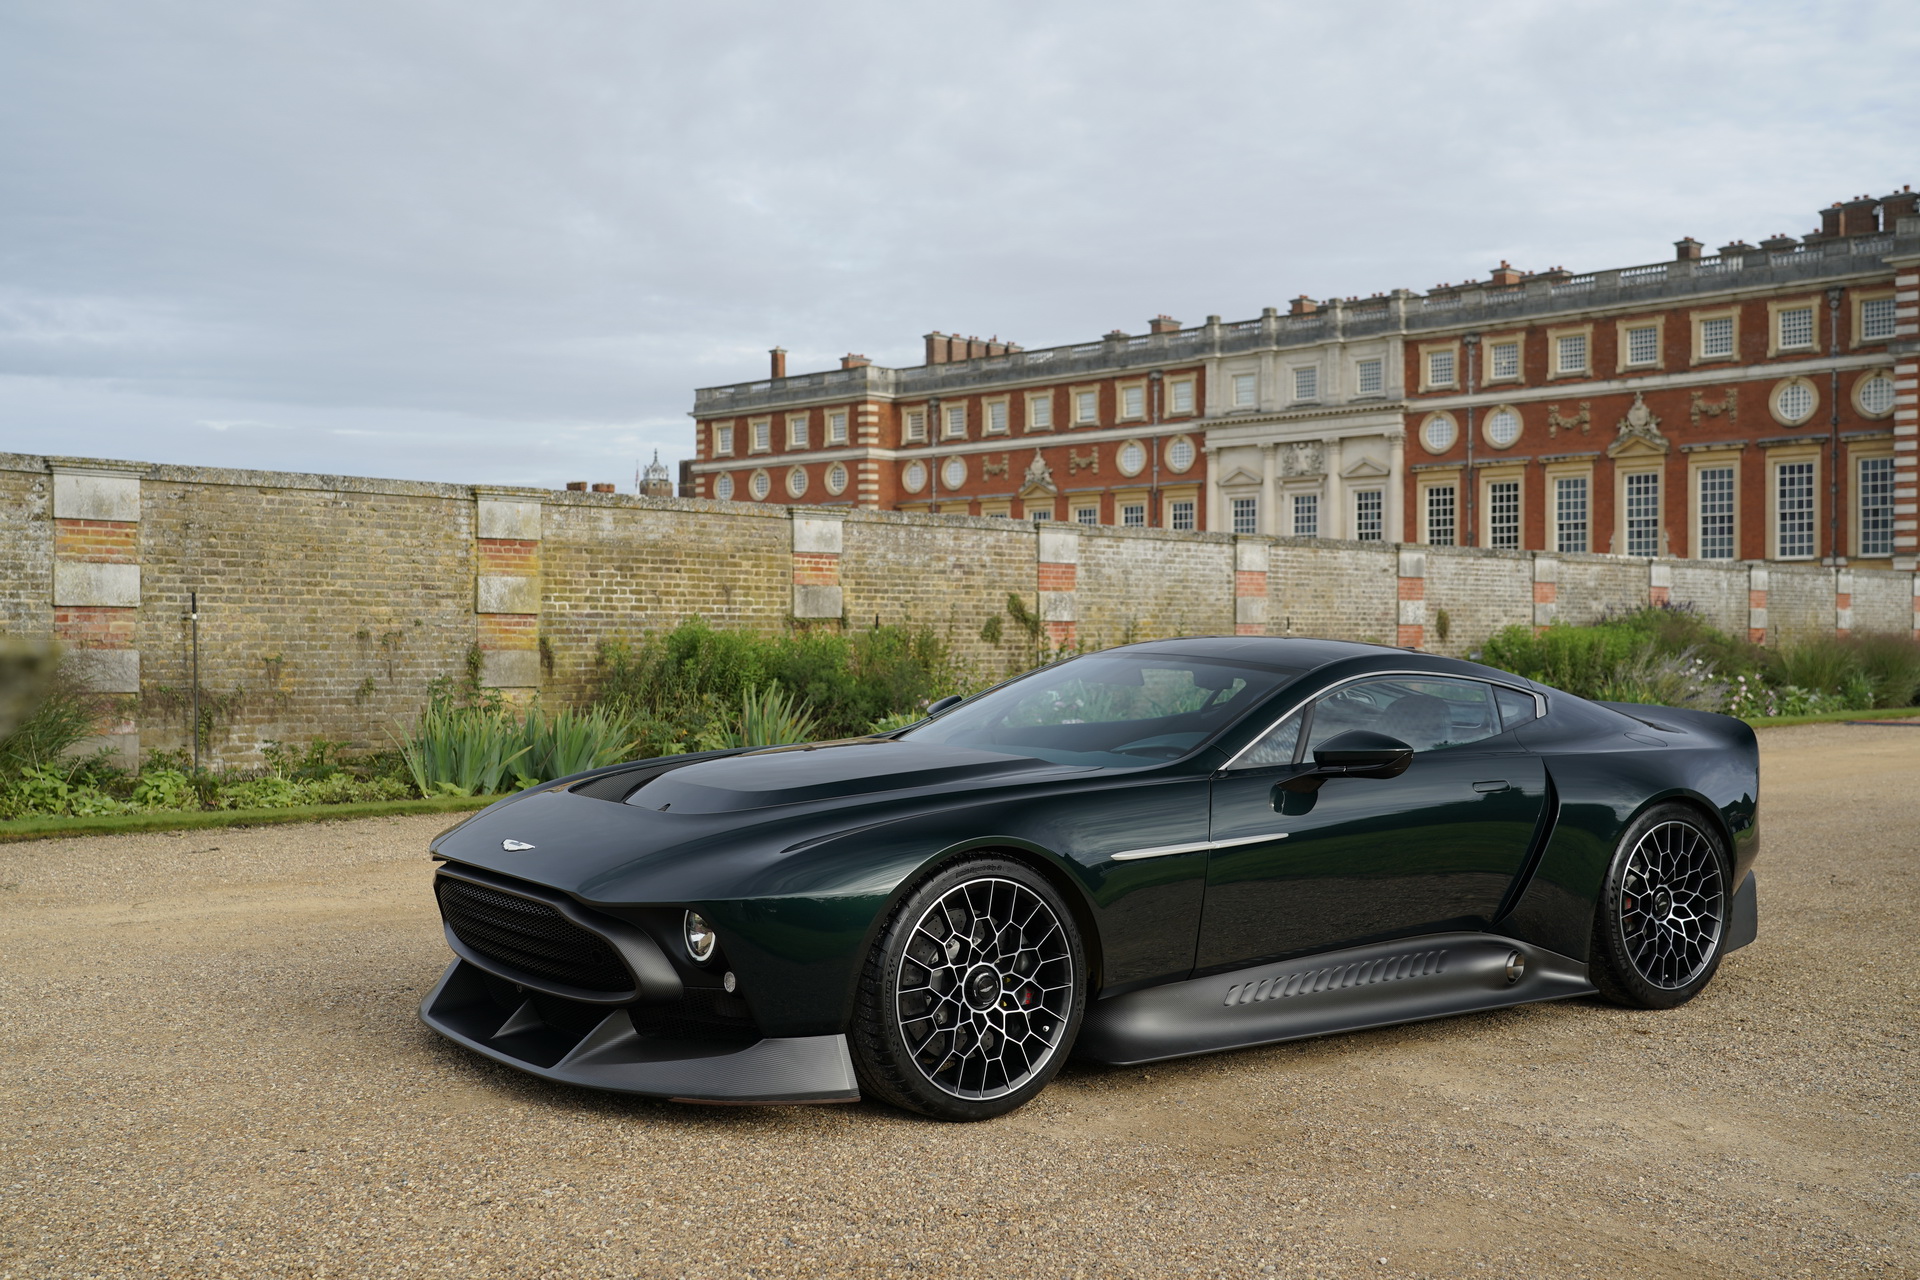 มีเพียงหนึ่งเดียว!! Aston Martin Victor หัวใจจาก ONE-77 ระห่ำด้วยชุดเกียร์แบบแมนน่วล